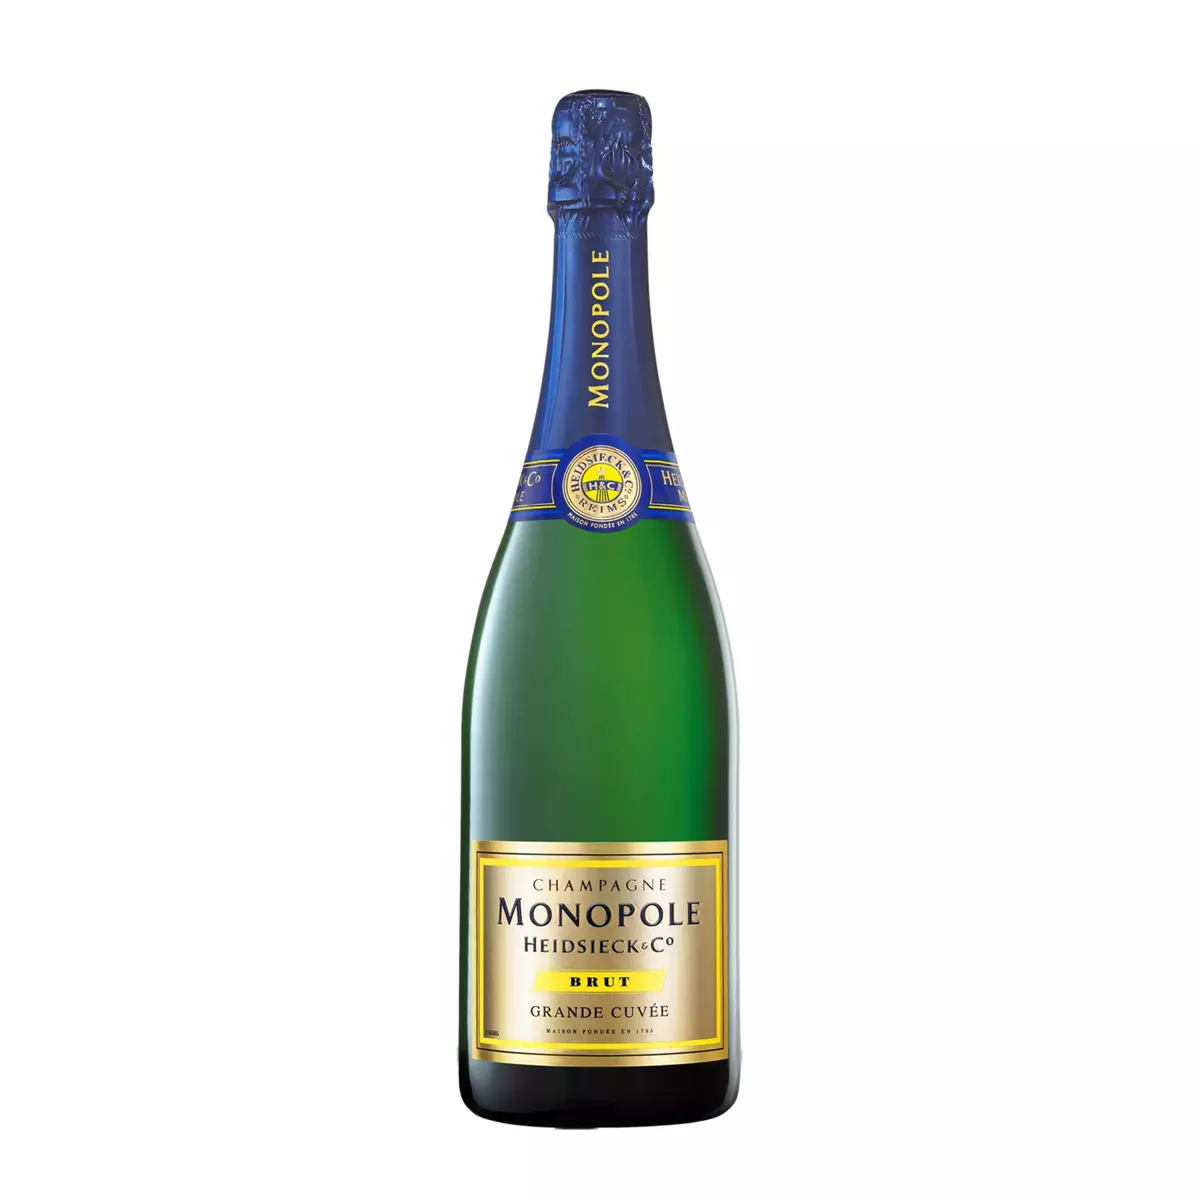 HEIDSIECK & CO MONOPOLE AOP Champagne Monopole grande cuvée brut 75cl